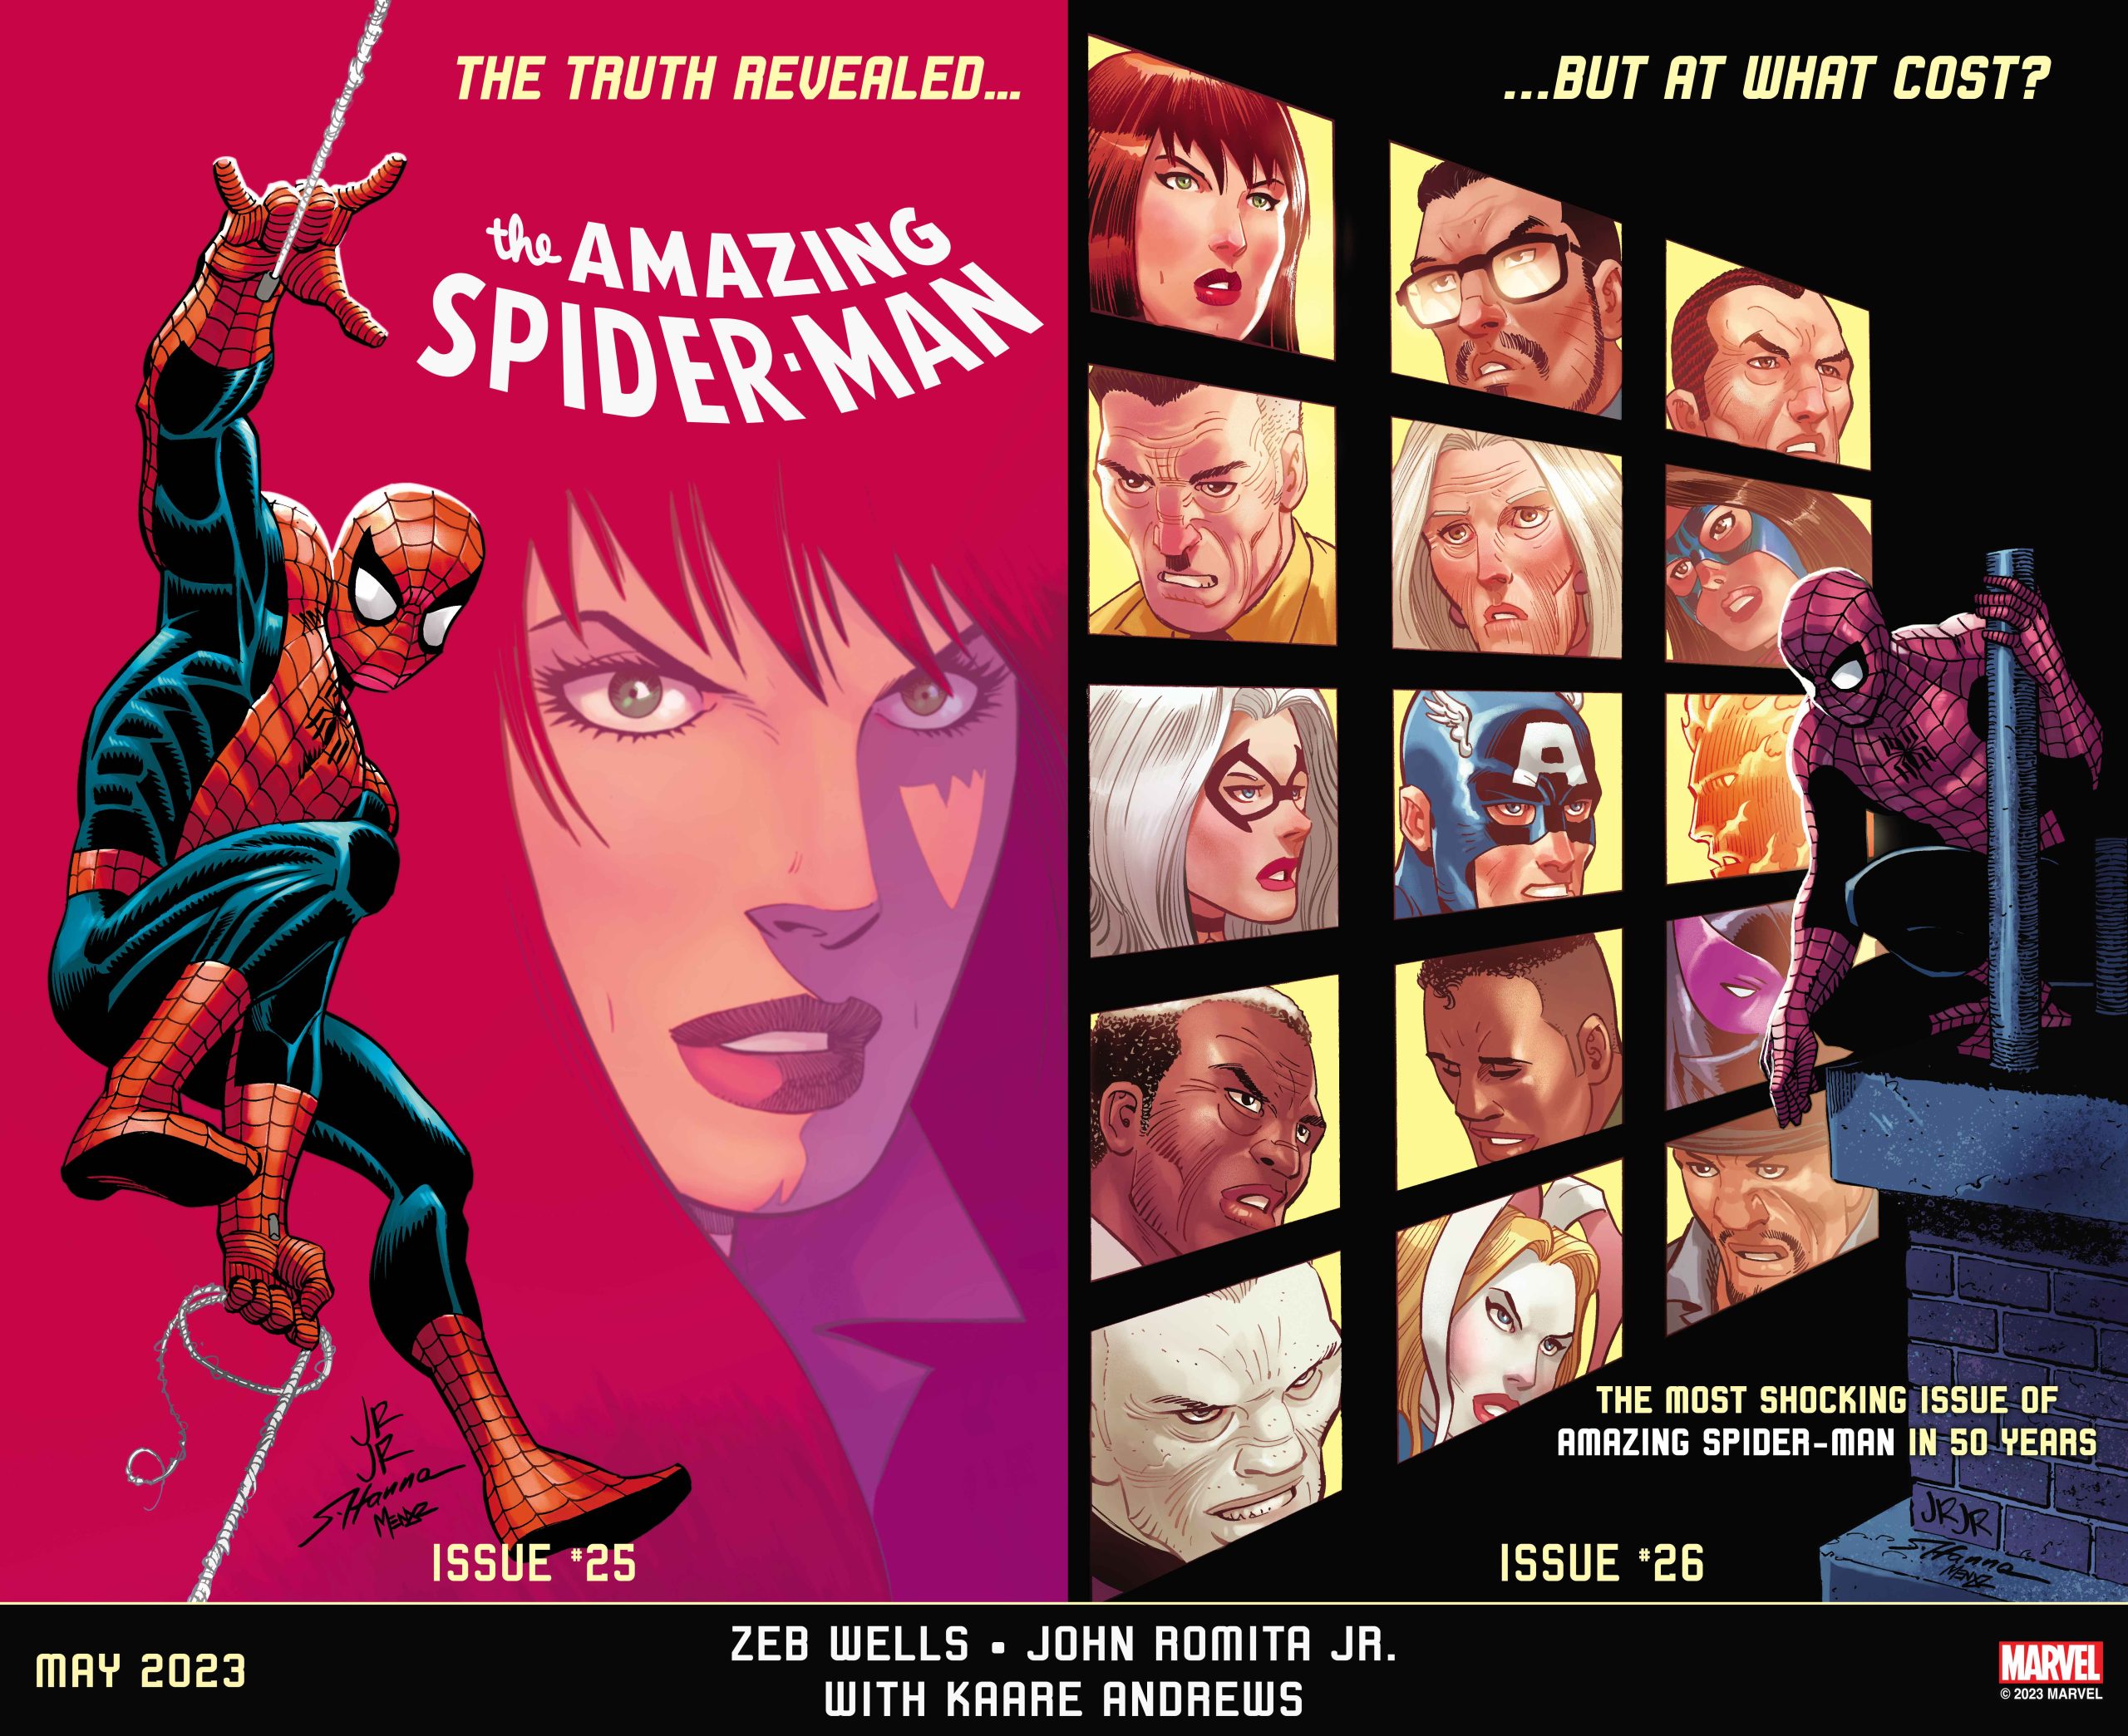 Spider-Man: la Marvel annuncia il fumetto più sconvolgente degli ultimi 50 anni